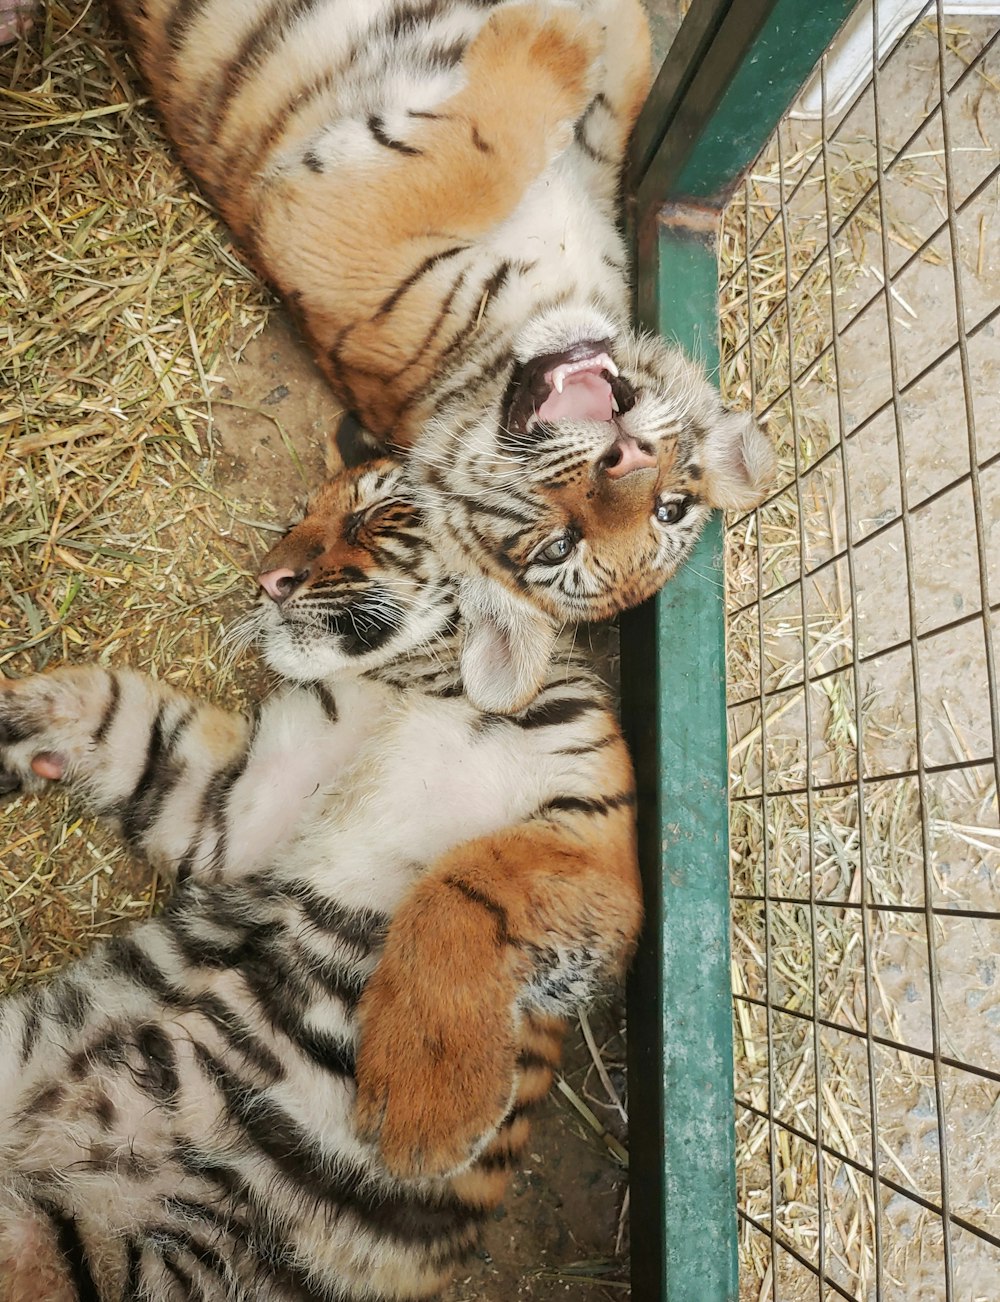 Deux tigres